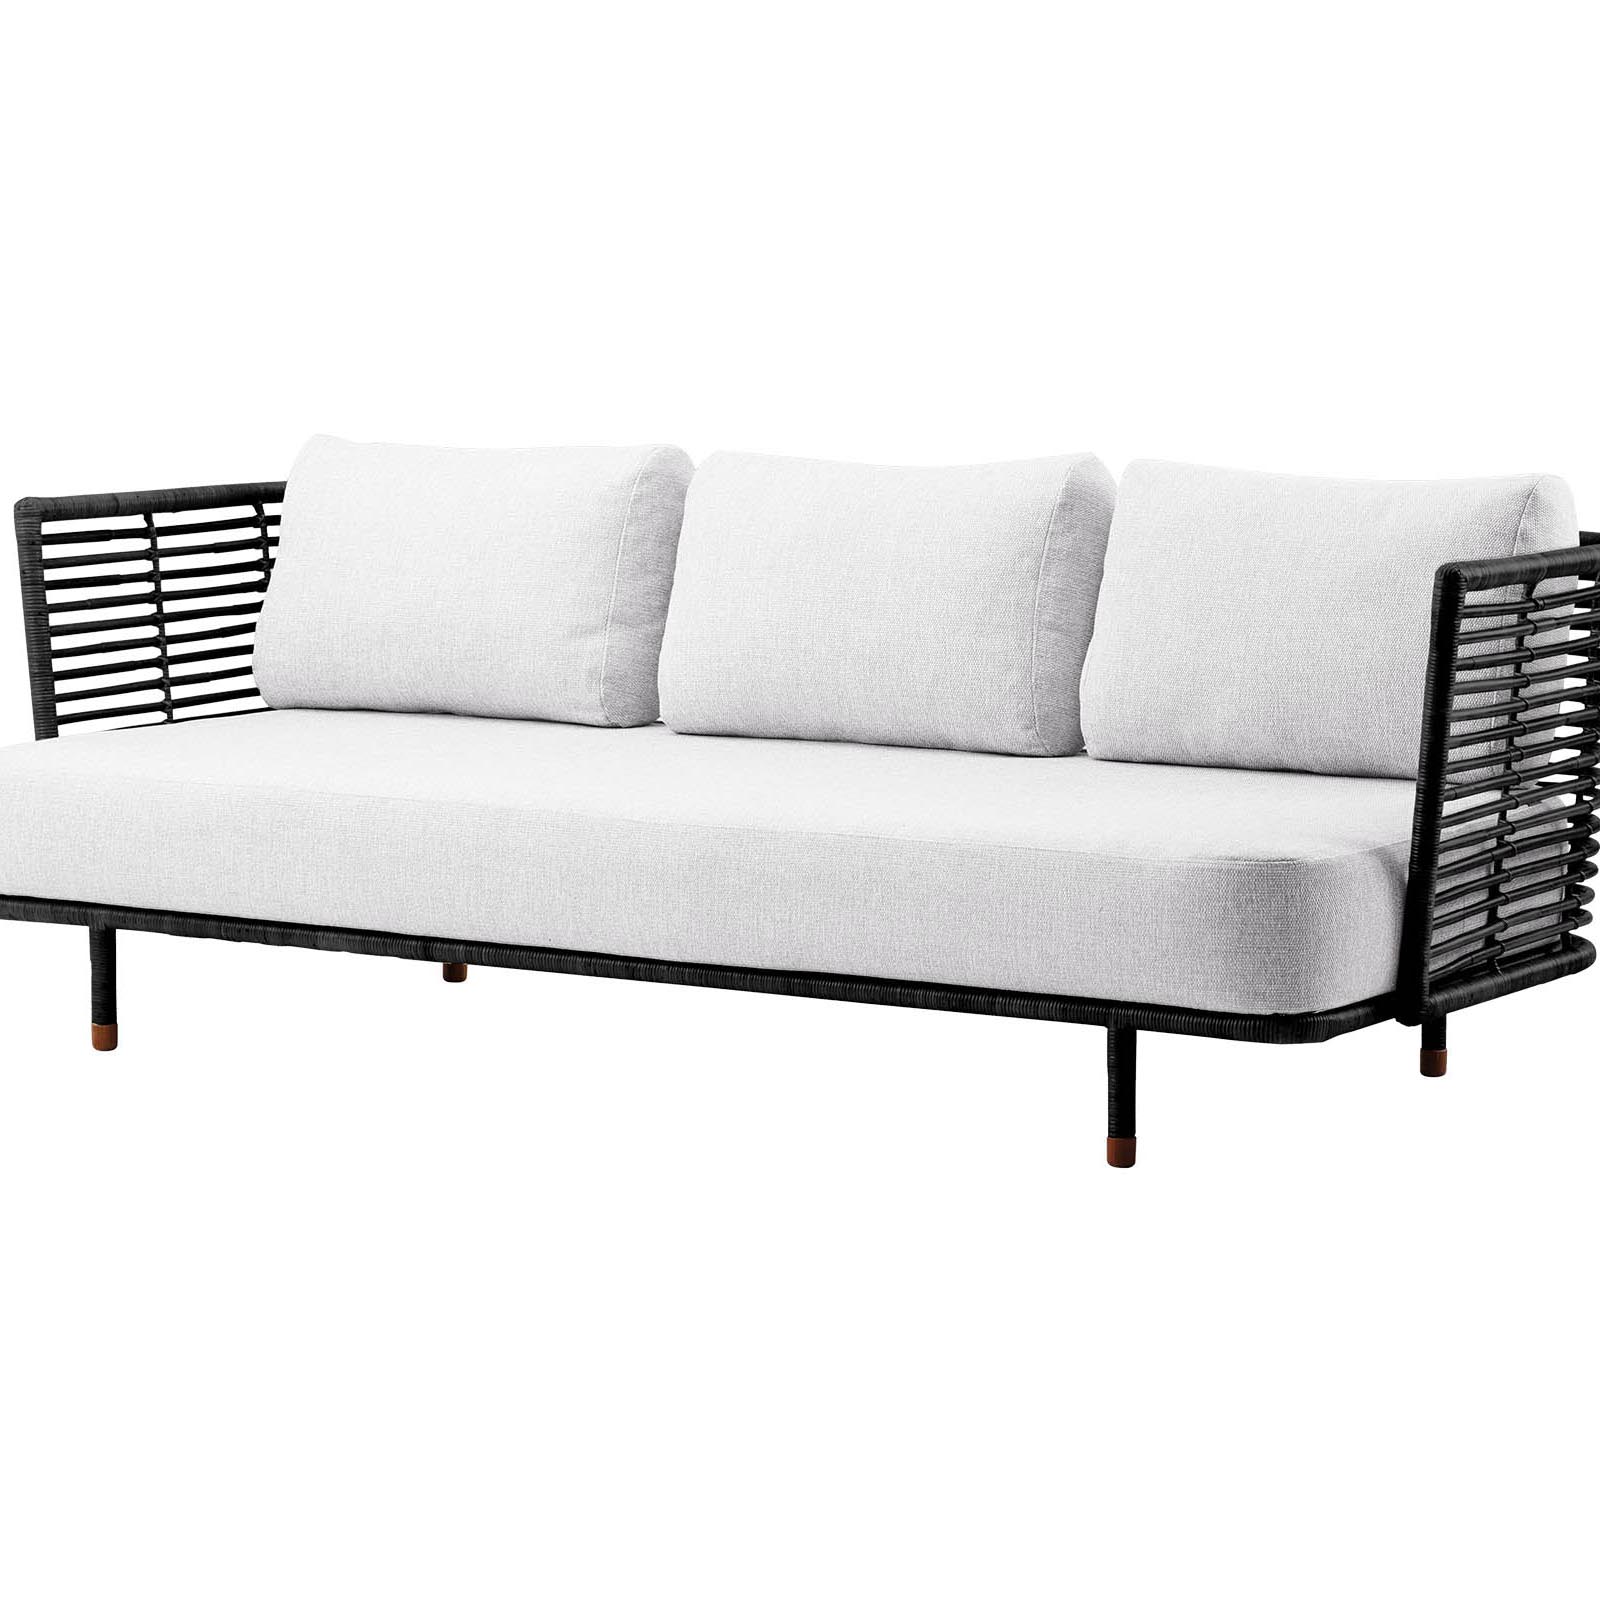 Sense 3-Sitzer Sofa aus Rattan in Black mit Kissen aus Cane-line Natté in White